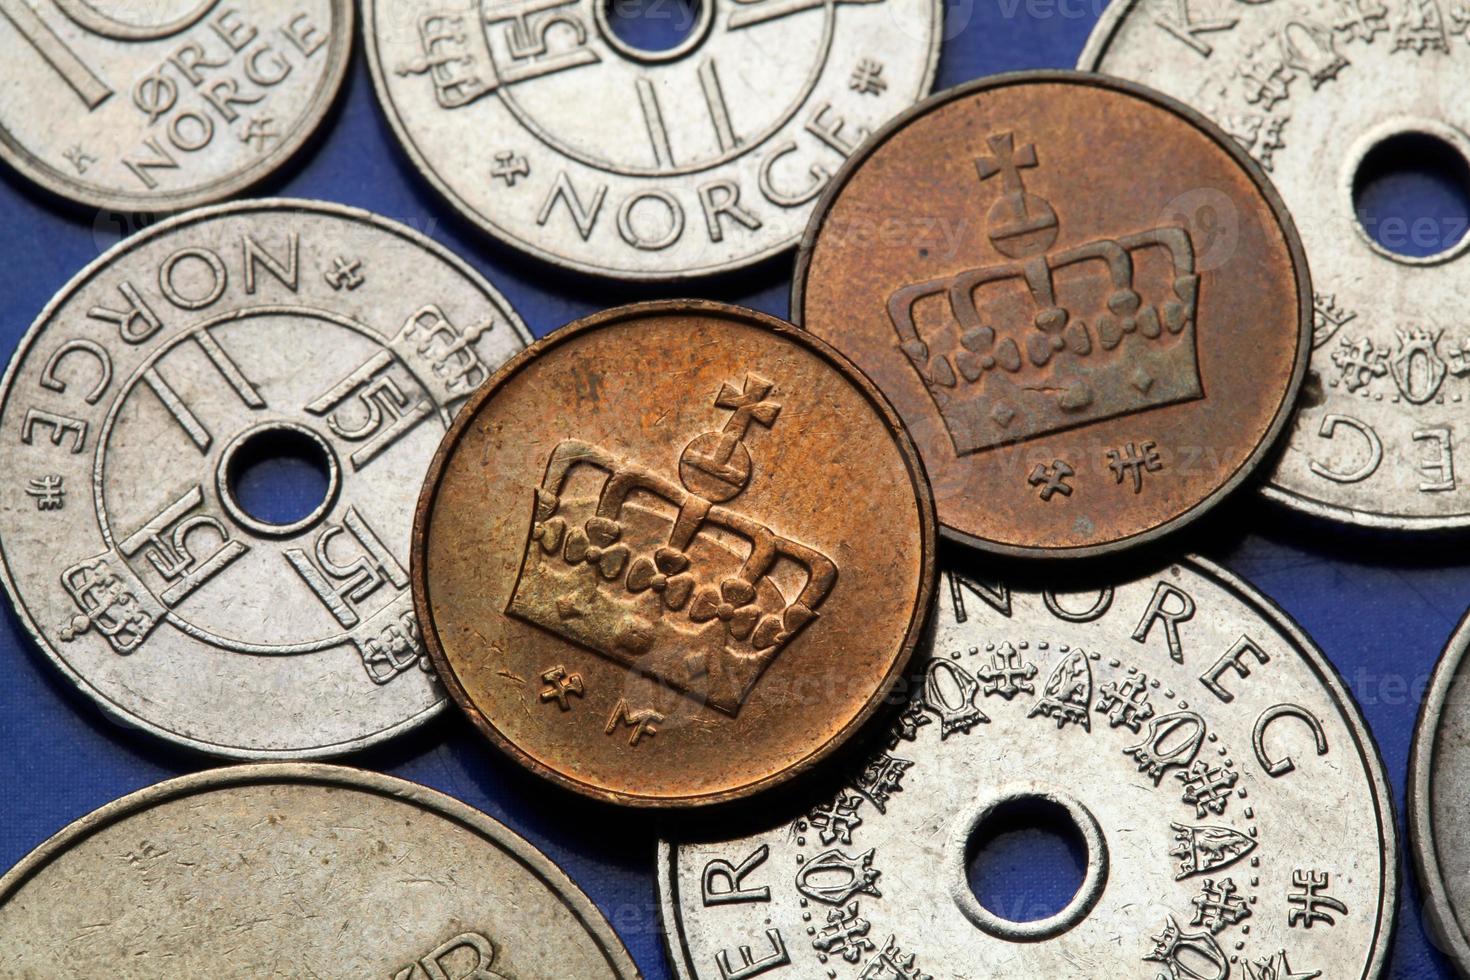 monnaies de norvège photo